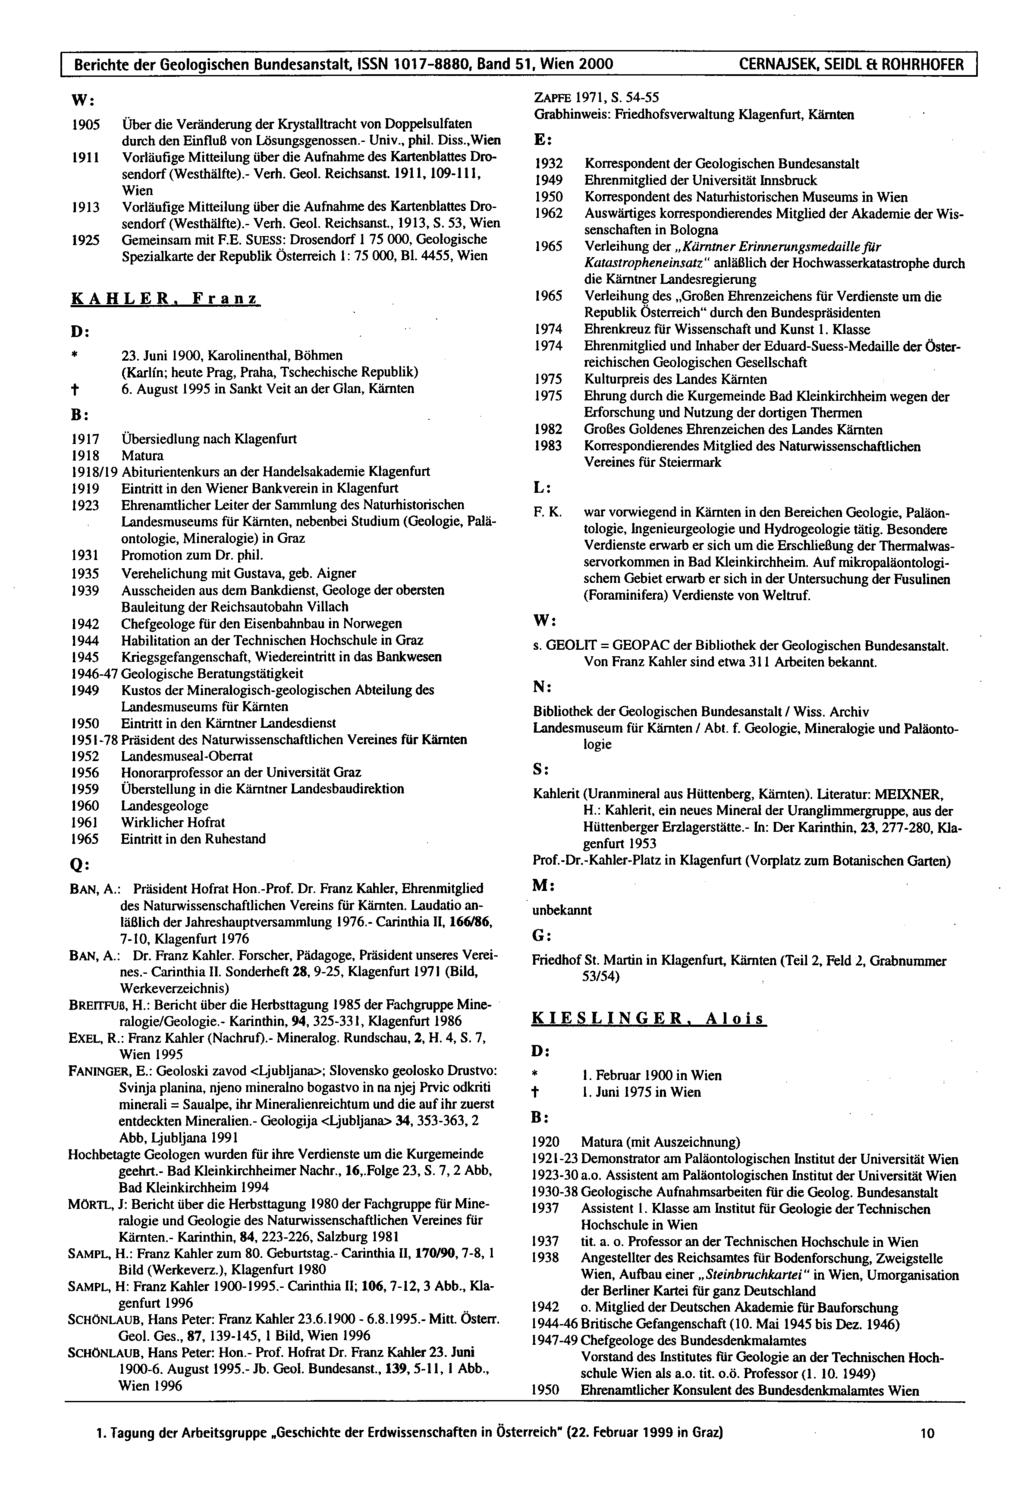 Berichte der Geologischen Bundesanstalt, ISSN 1017-8880.